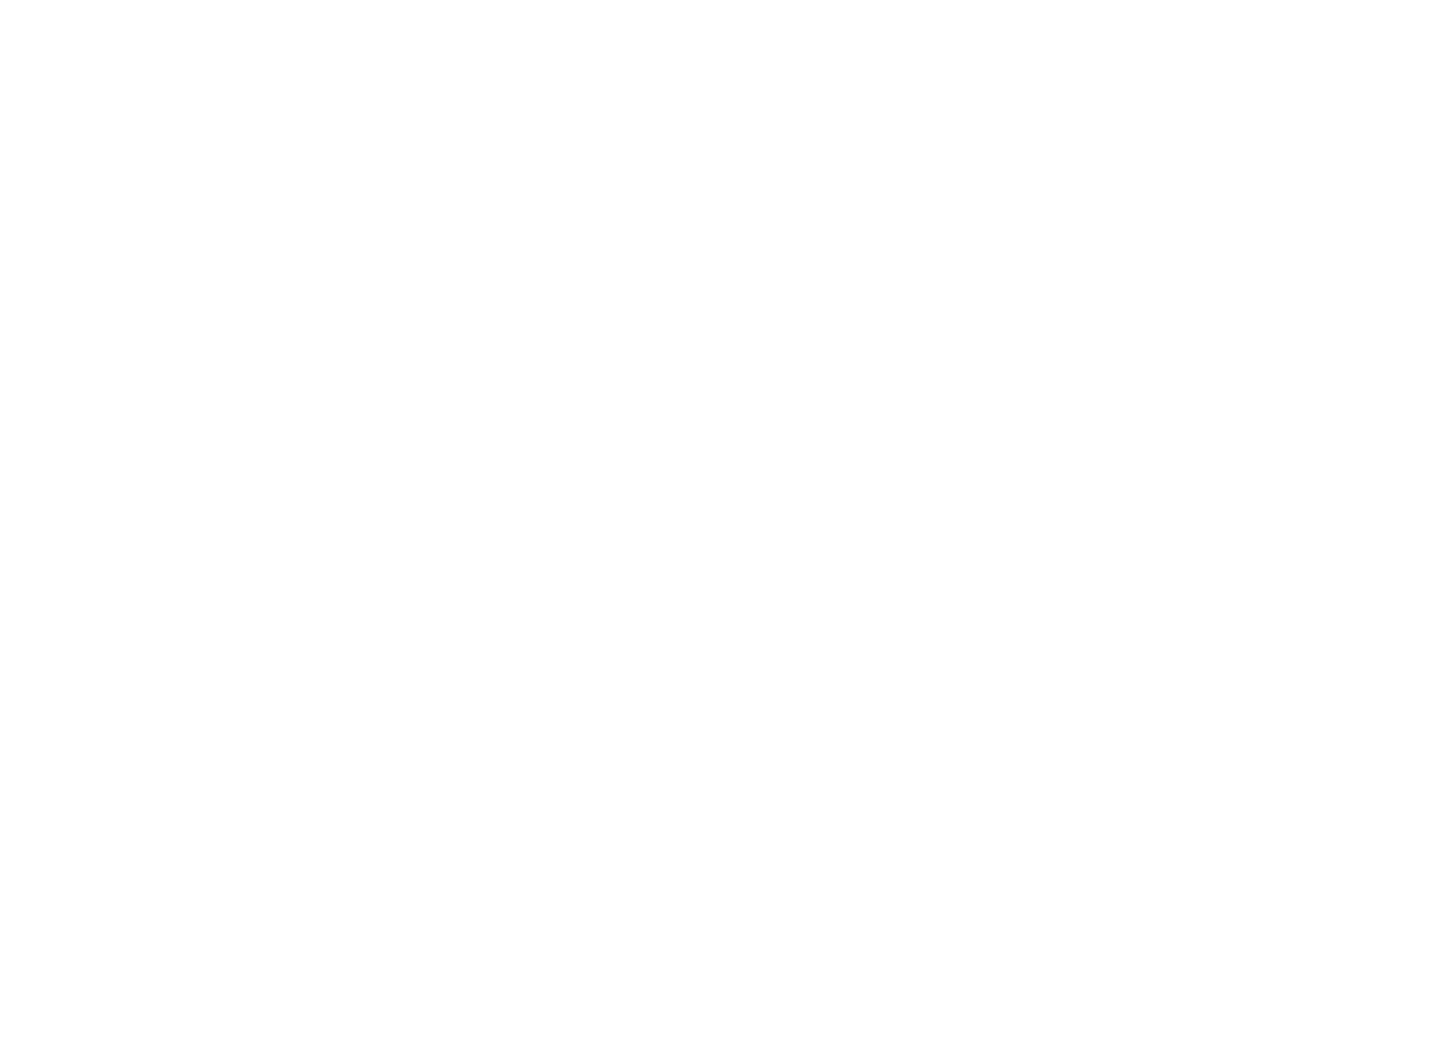 Jay Wedi